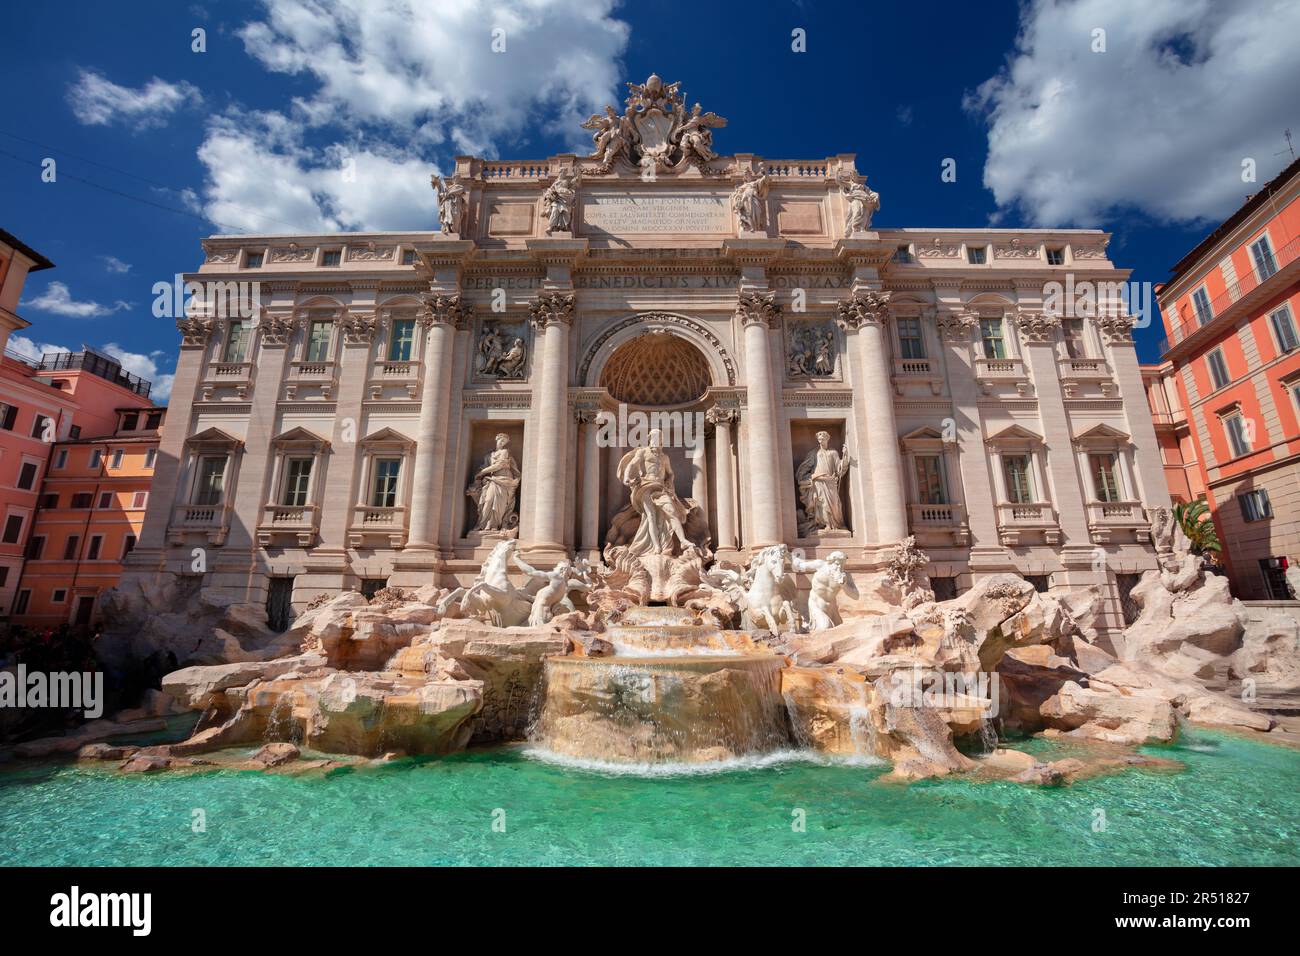 Fontana di Trevi, Roma, Italia. Immagine del paesaggio urbano di Roma, Italia con l'iconica Fontana di Trevi nelle giornate di sole. Foto Stock